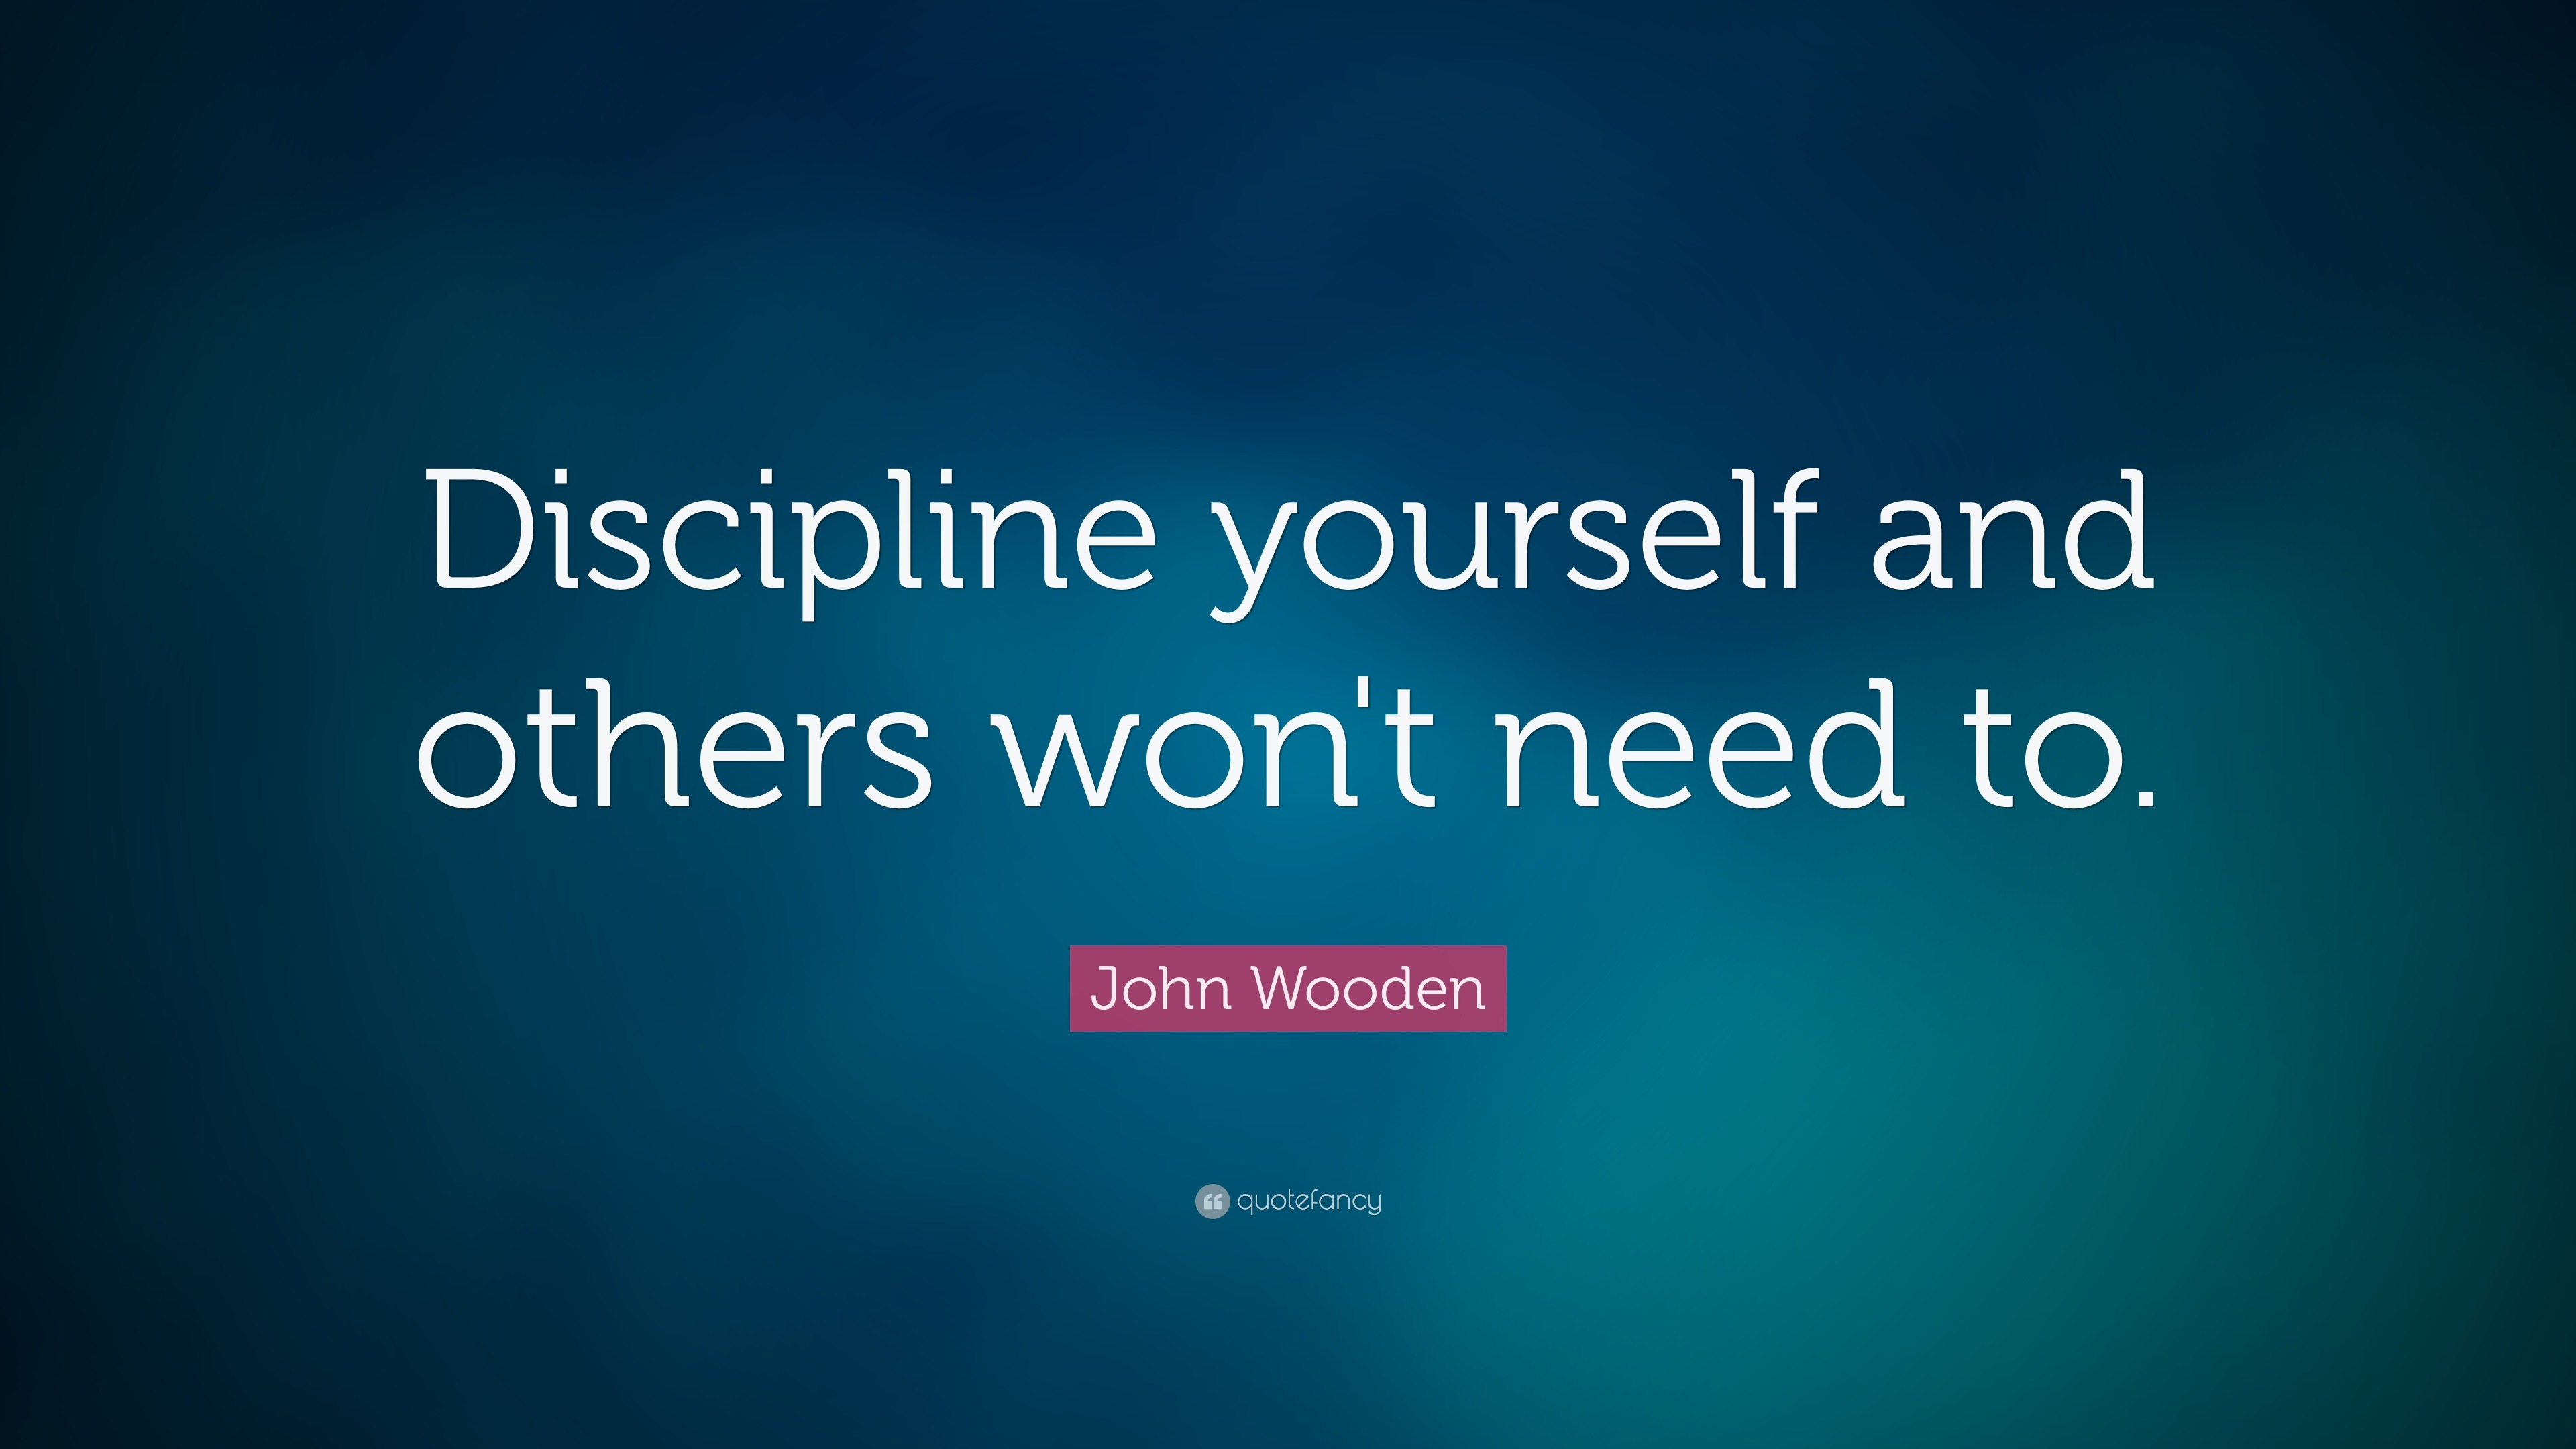 John Wooden Quotes (100 wallpapers) - Quotefancy